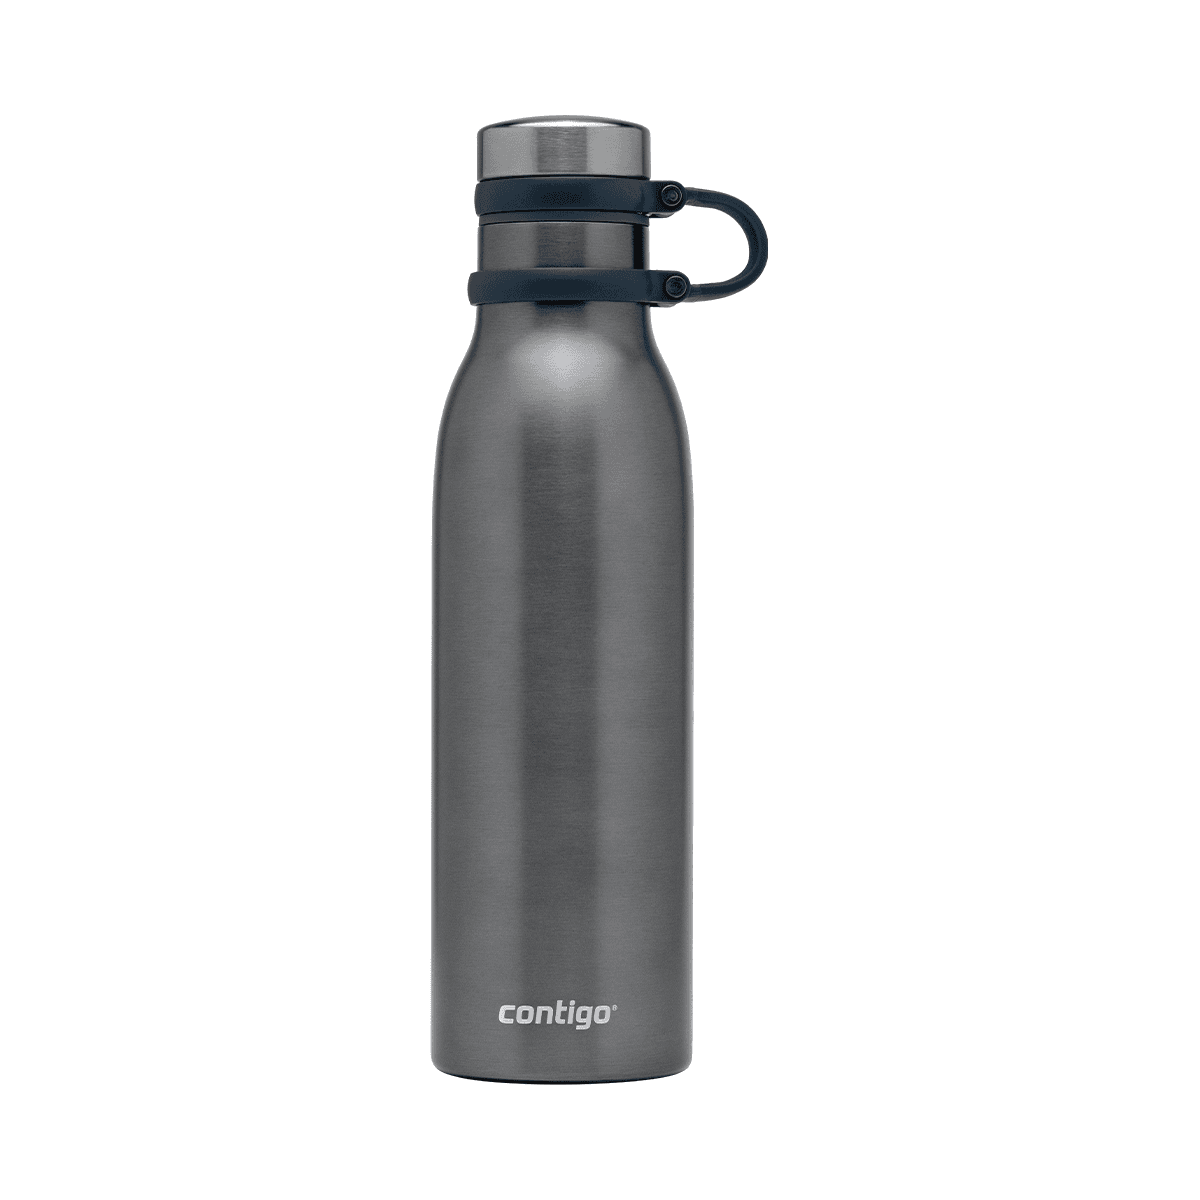 زجاجة ماء حافظة للحرارة 590 مل ستانلس ستيل بلح البحر كونتيجو Contigo Mussel Matterhorn Vacuum Insulated Bottle